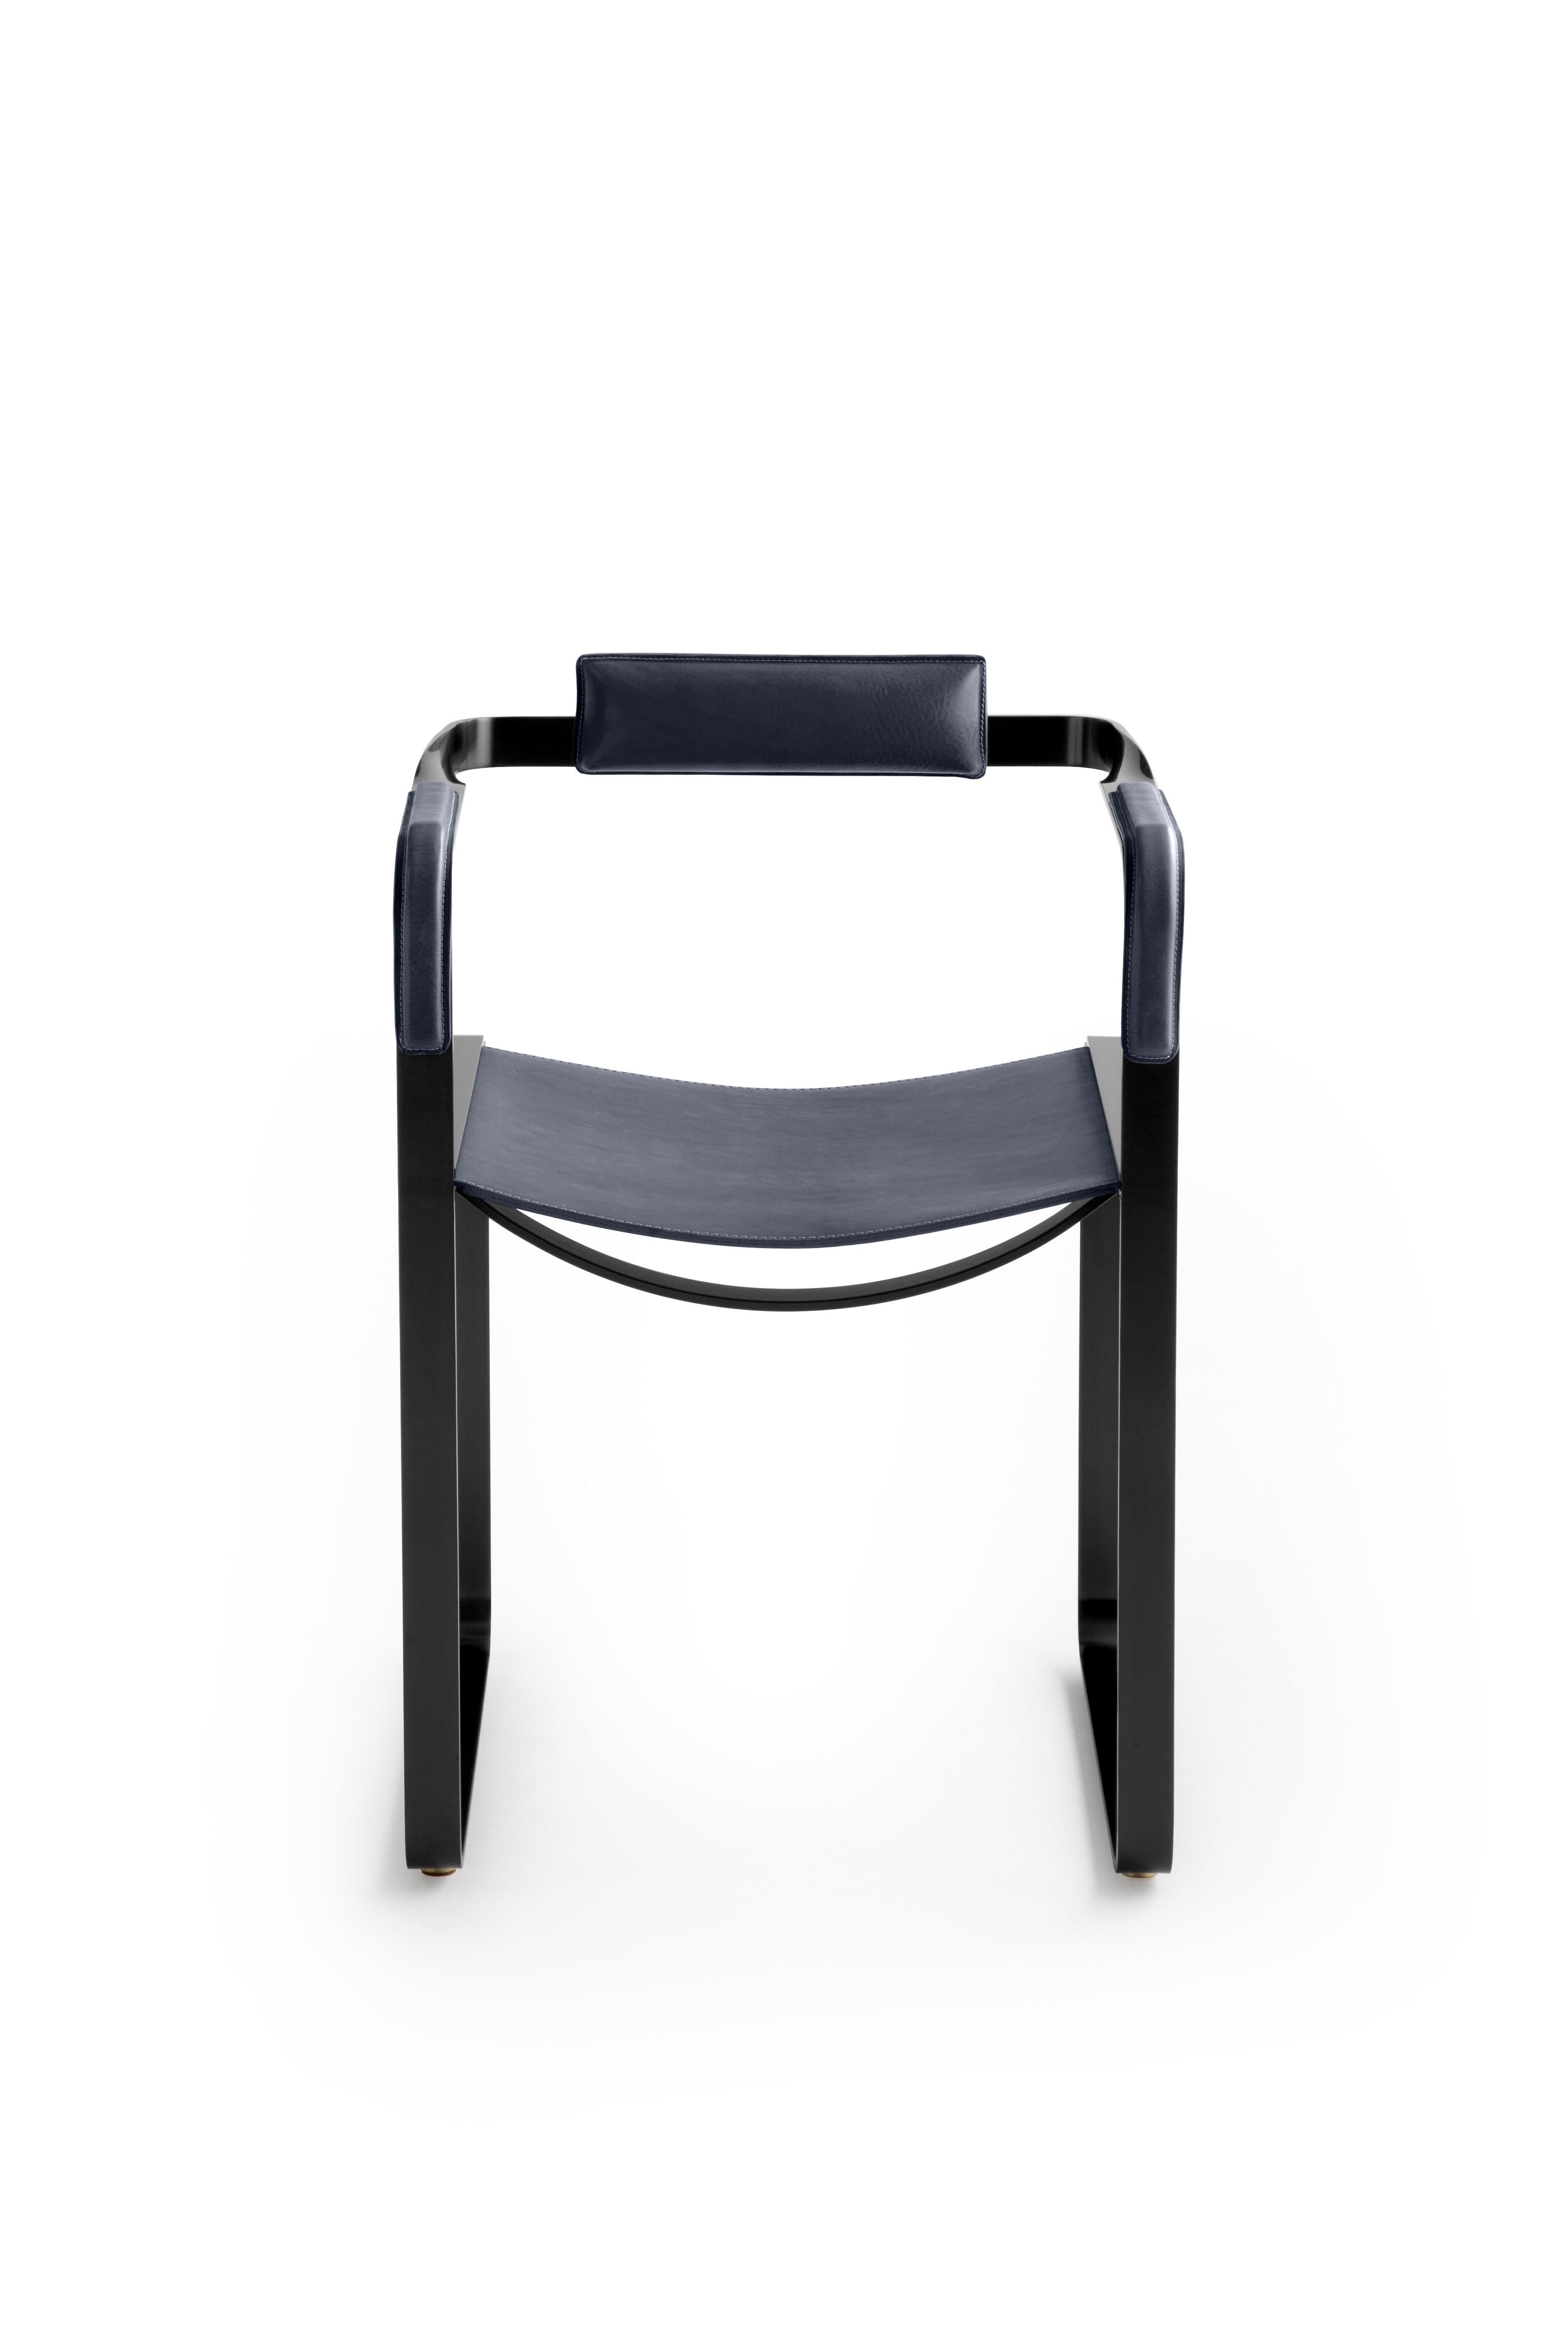 Der zeitgenössische Sessel Wanderlust gehört zu einer Kollektion von minimalistischen und ruhigen Stücken, bei denen sich Exklusivität und Präzision in kleinen, auf den ersten Blick unscheinbaren Details wie den handgedrehten Metallmuttern und